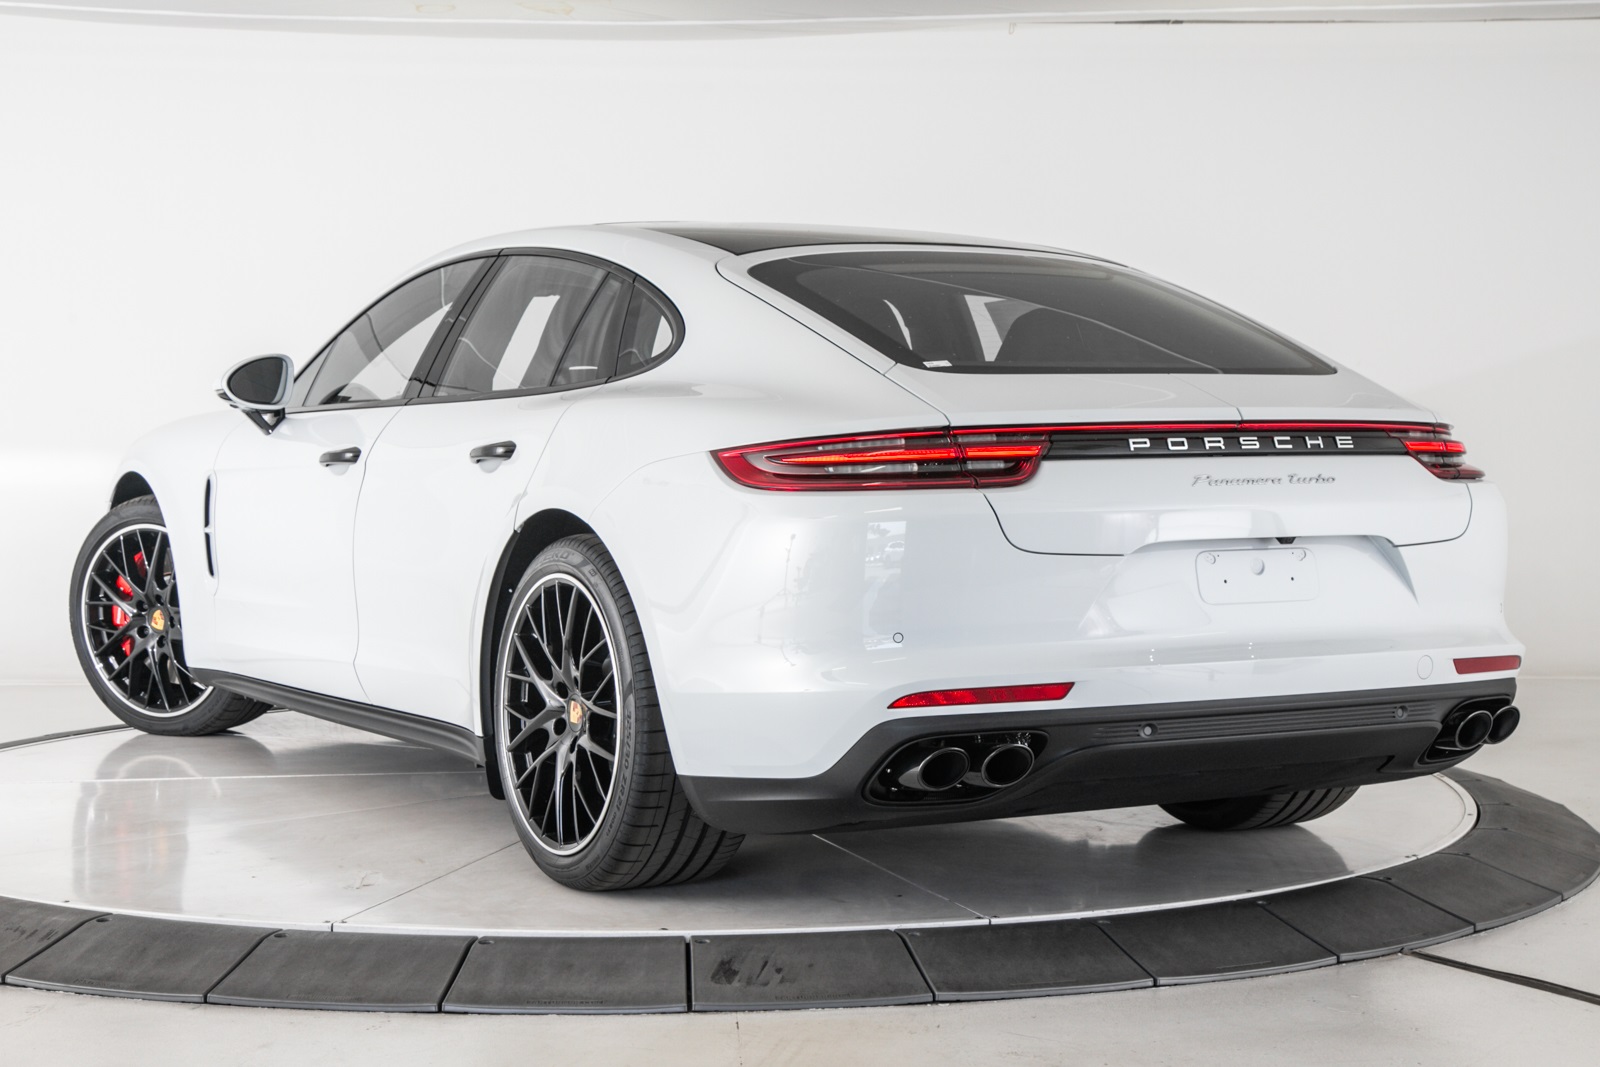 New 2019 Porsche Panamera Turbo 4D Hatchback in Pasadena